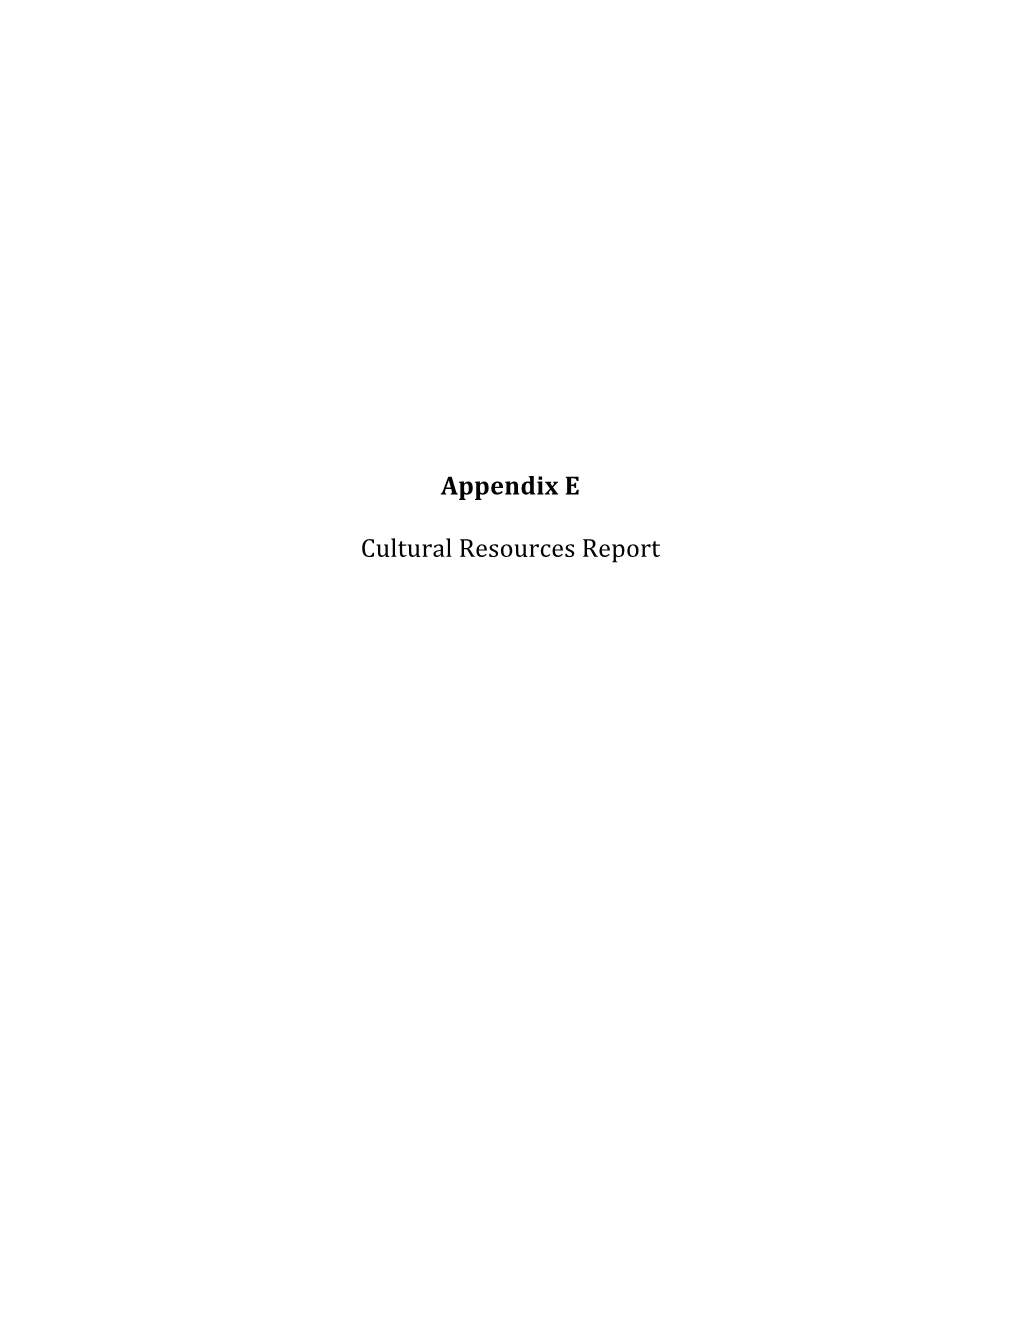 Appendix E Cultural Resources Report